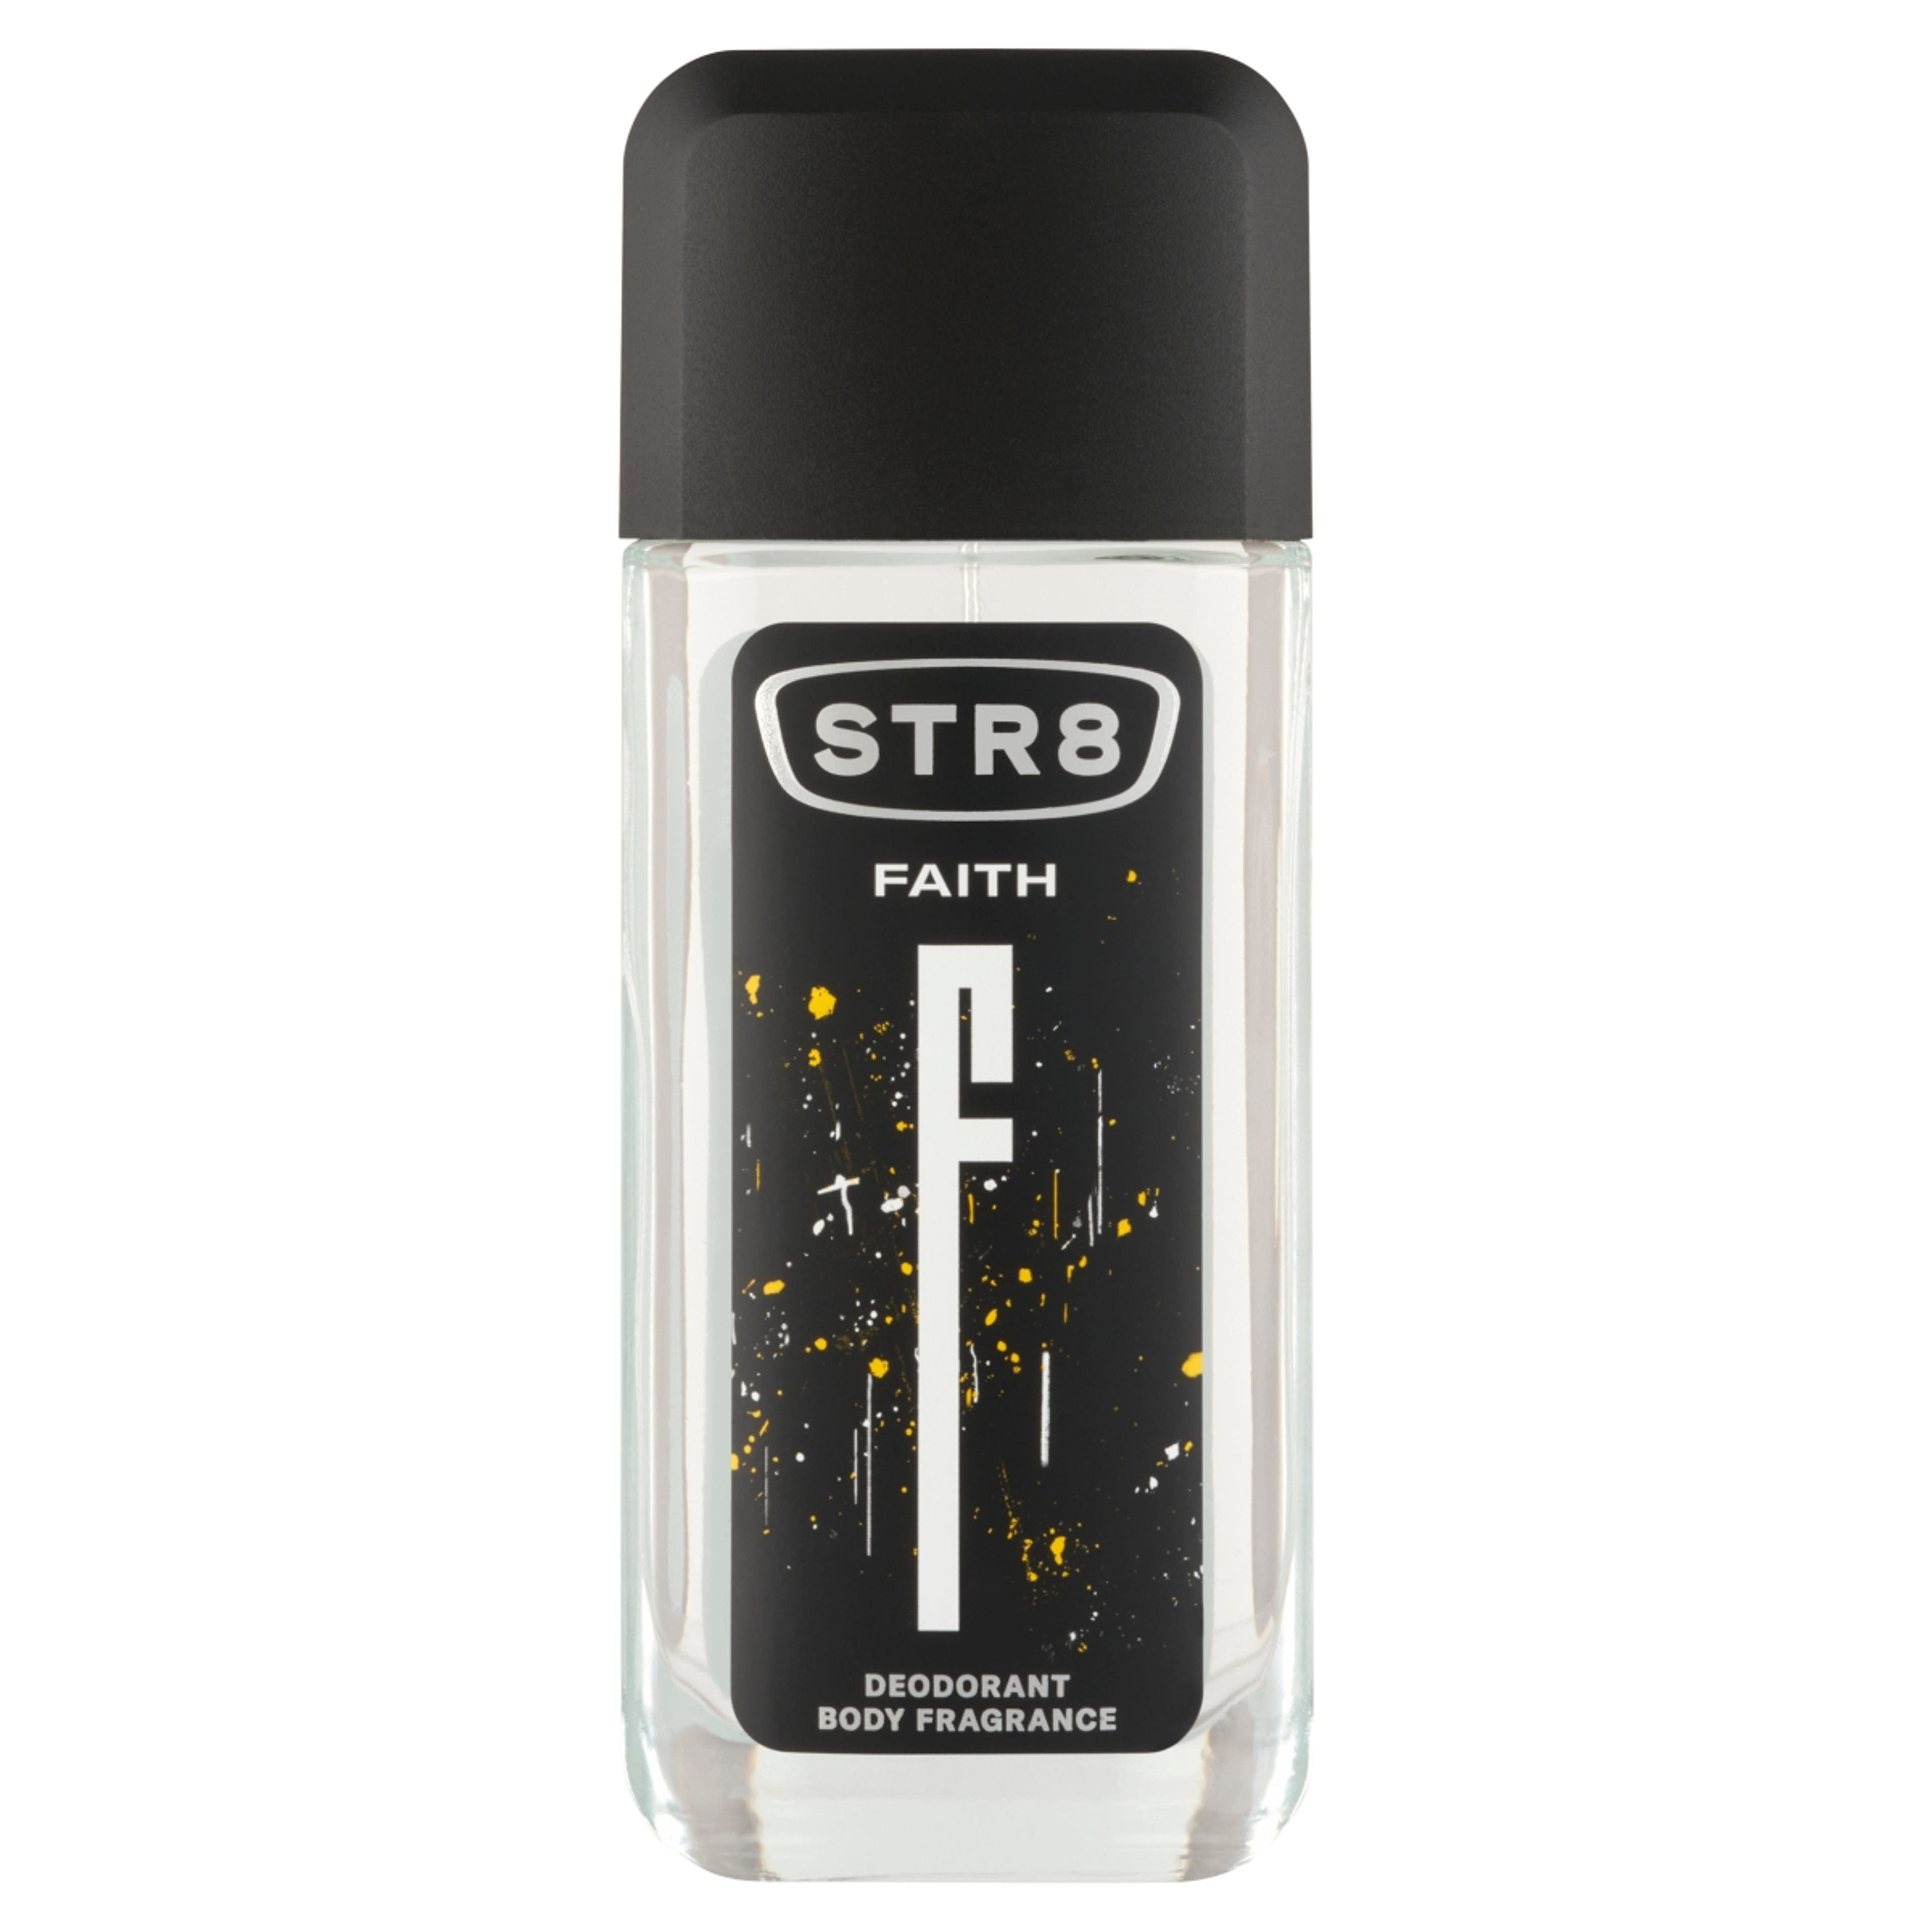 STR8 Faith Body Fragrance parfüm-spray  - 85 ml-1